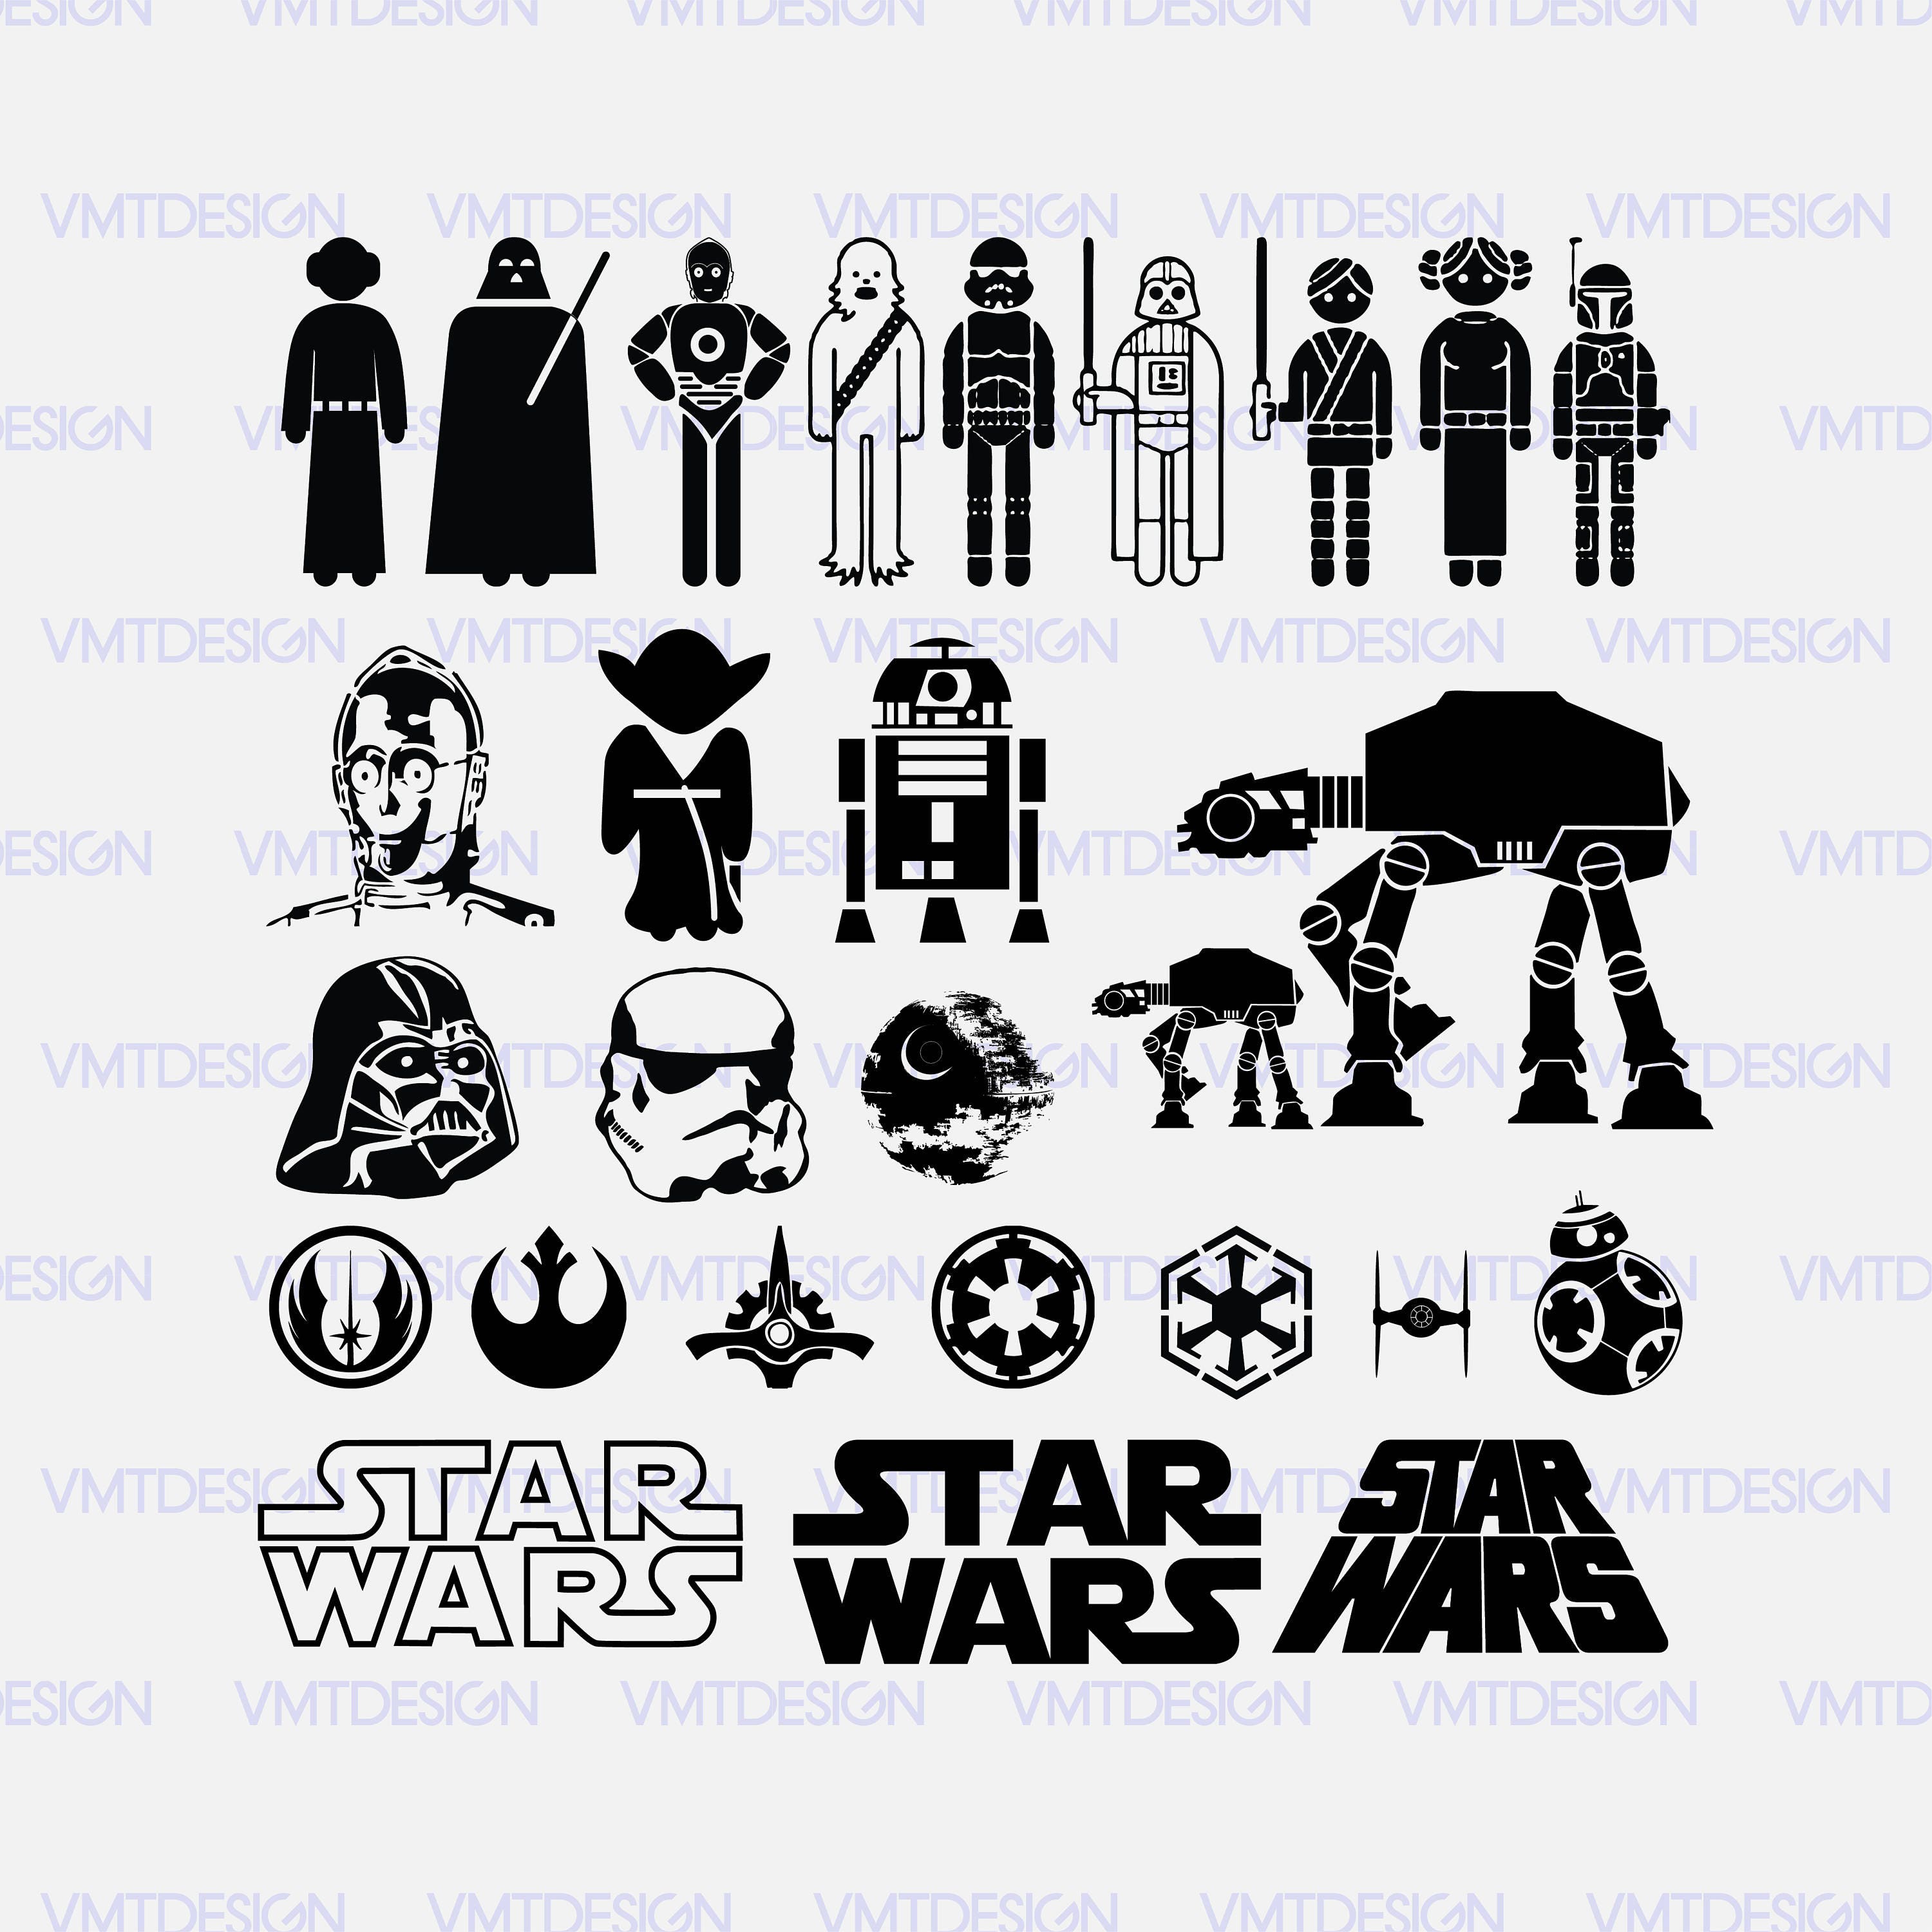 Download Star wars svg - Star wars vector - Starwars clipart ...